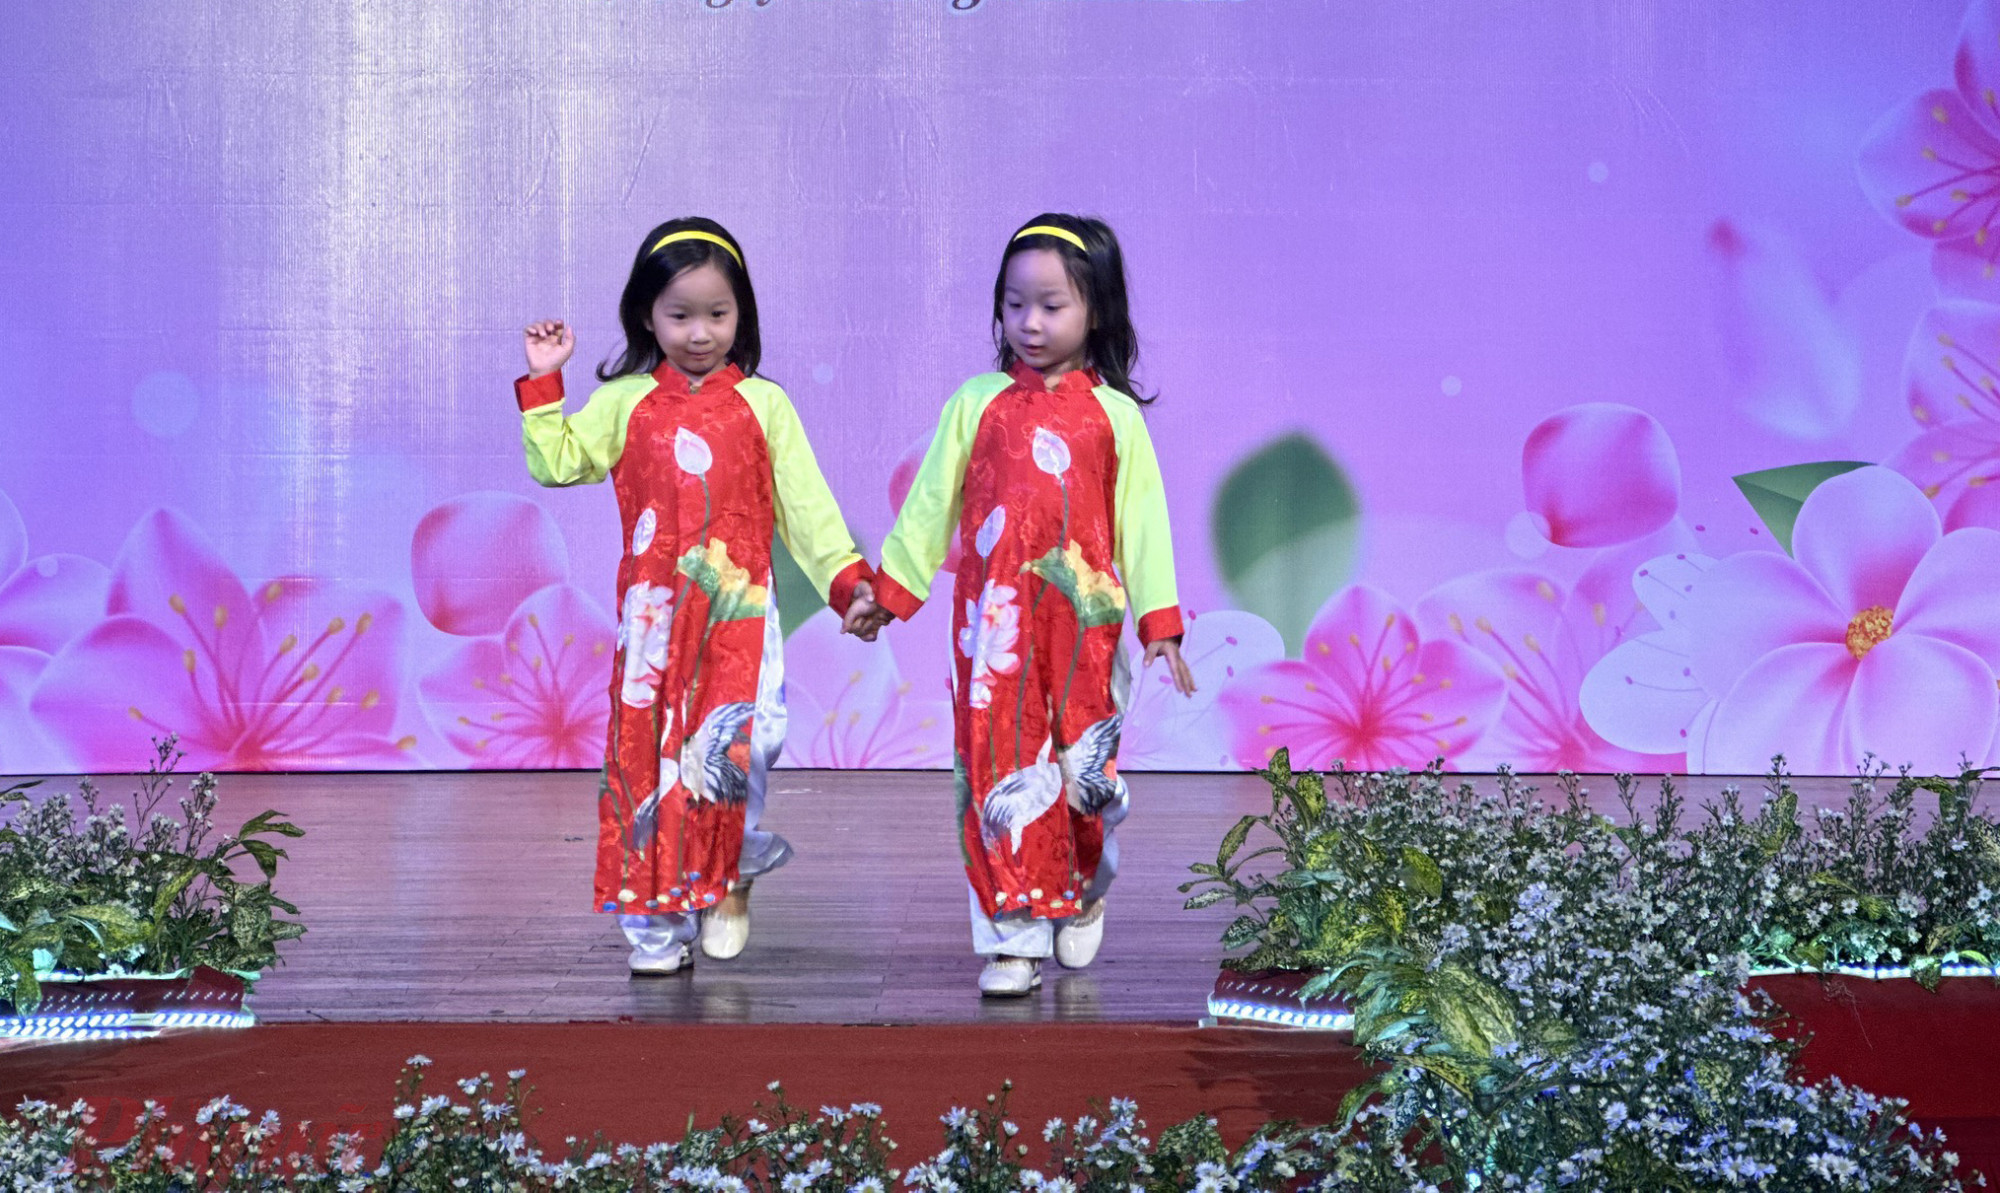 Hai bé gái biểu diễn rất duyên dáng và nhận được những tràn pháo tay từ khán giả